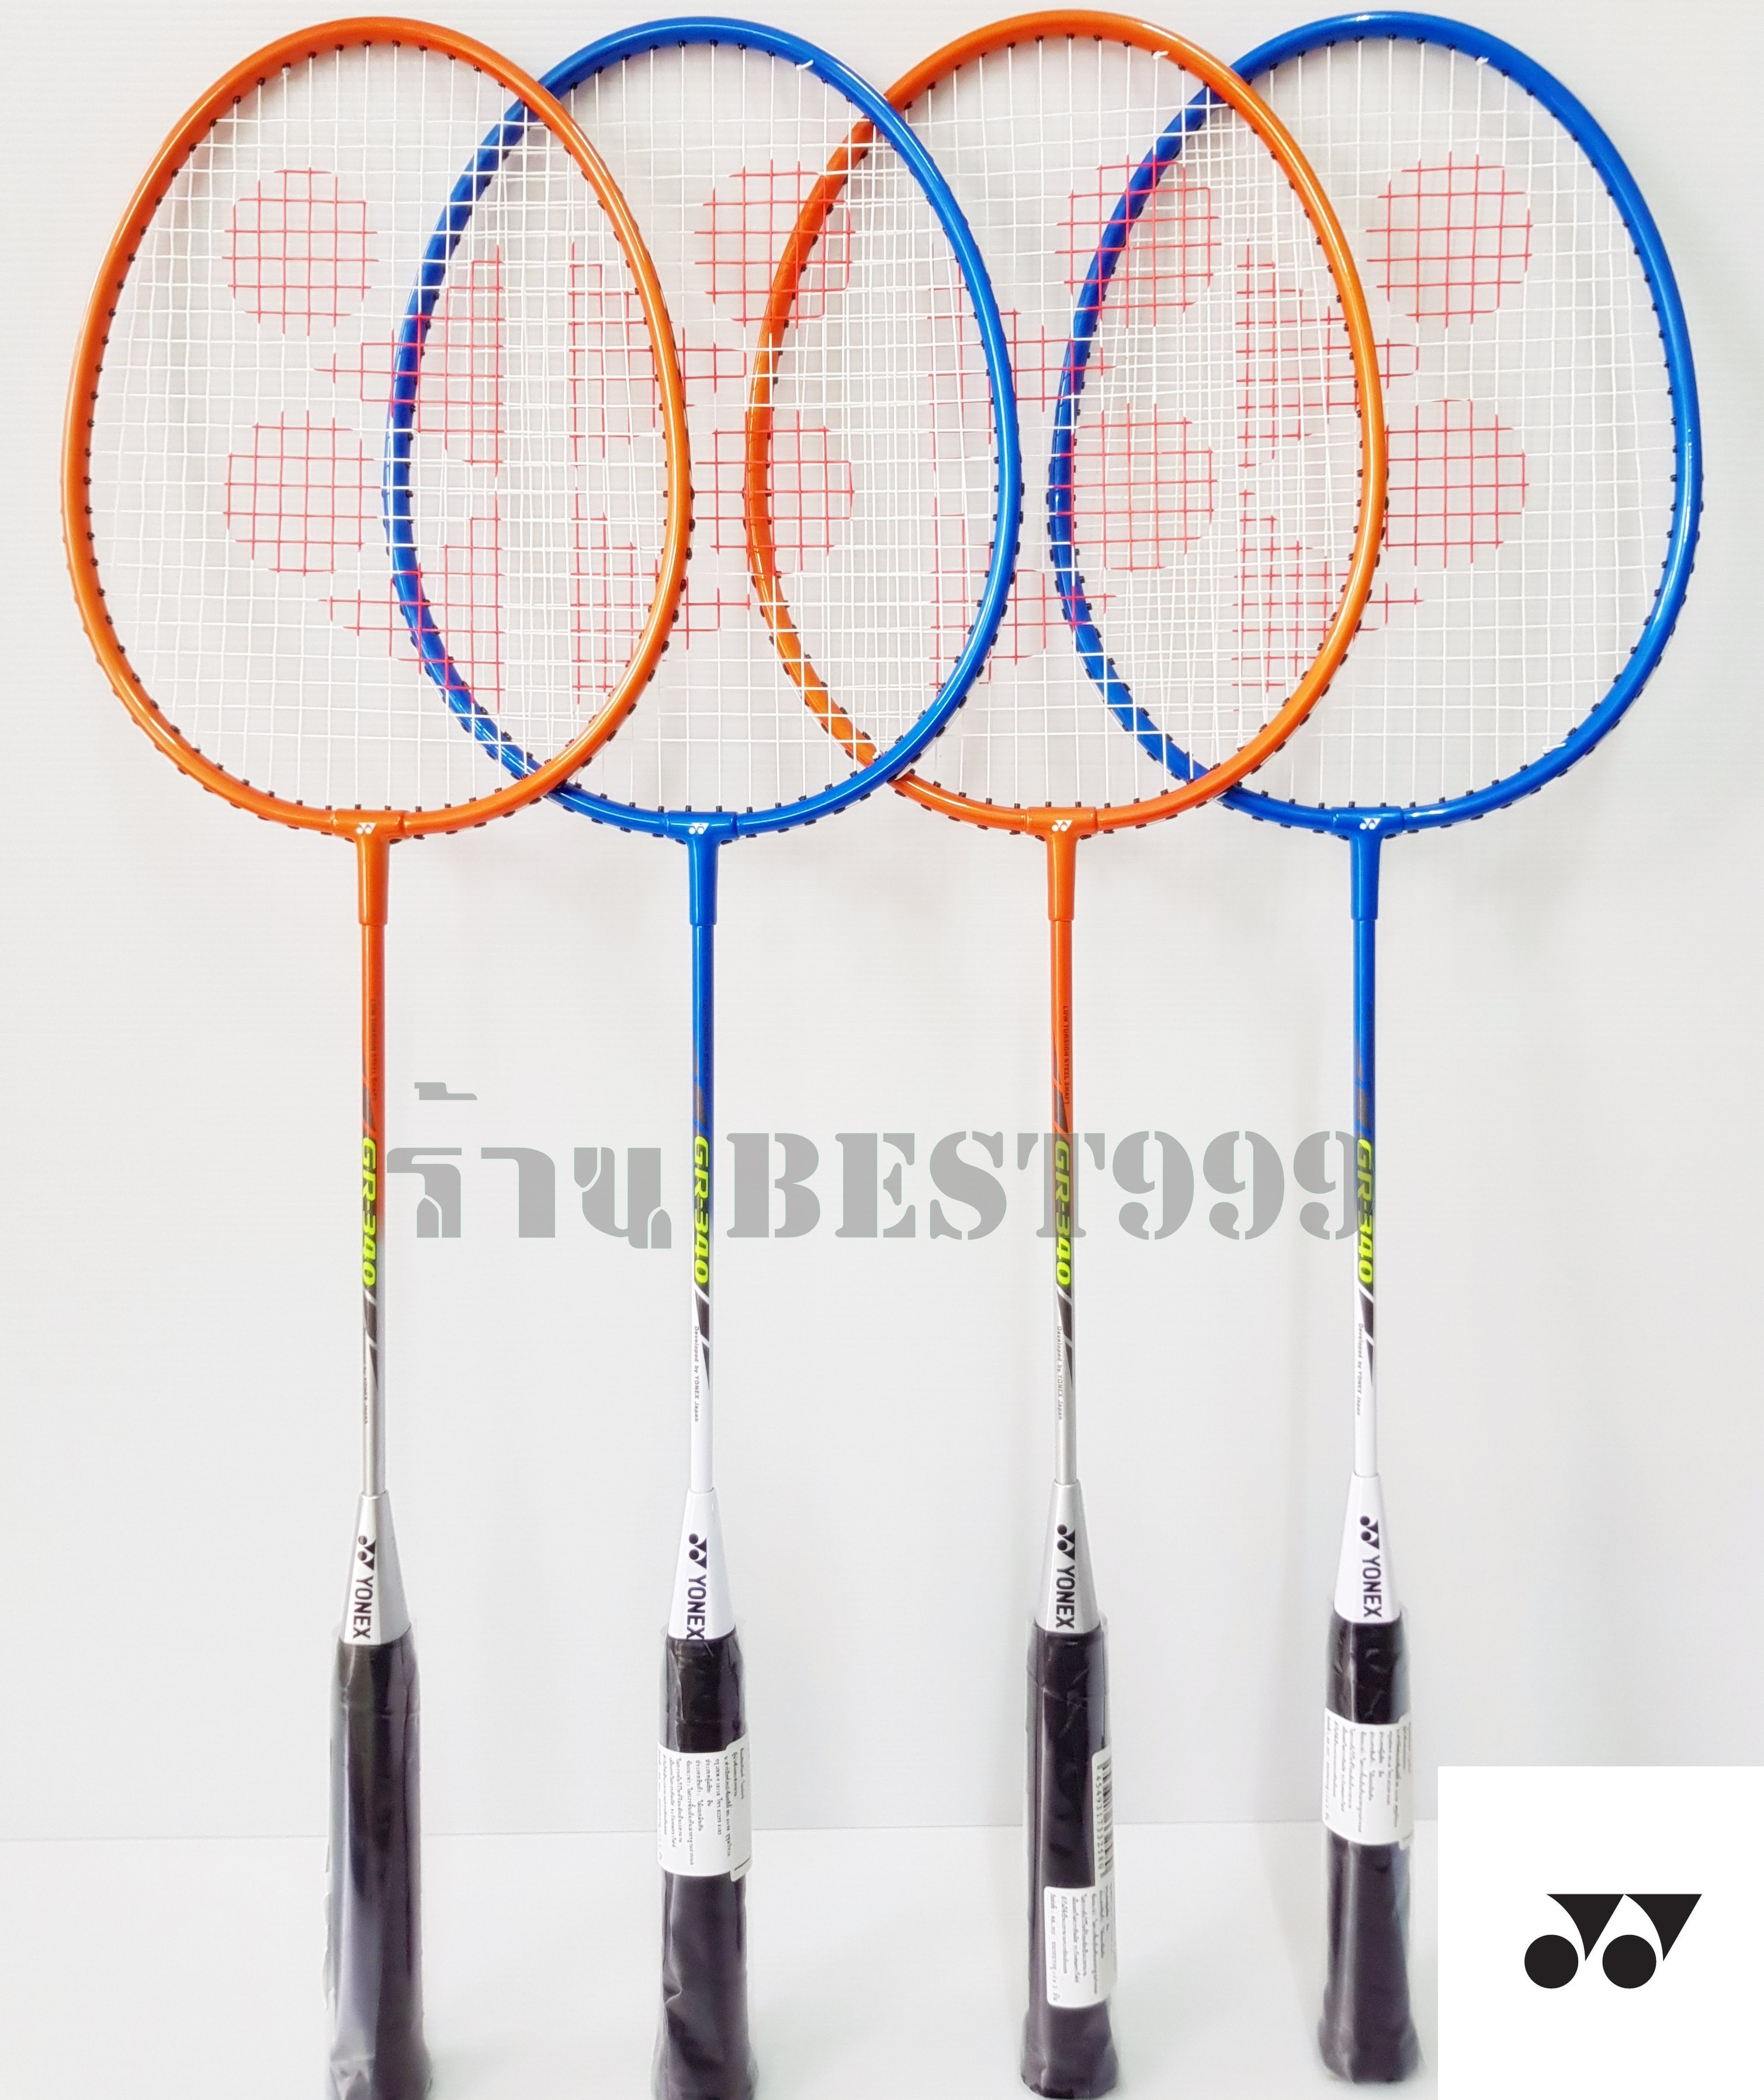 รายละเอียดเพิ่มเติมเกี่ยวกับ ไม้แบด yonex รุ่น GR-340 (รุ่นใหม่) badminton racket ไม้แบดมินตัน ไม้ตีแบด badminton YONEX โยเน็กซ์ แบด กีฬาแบด